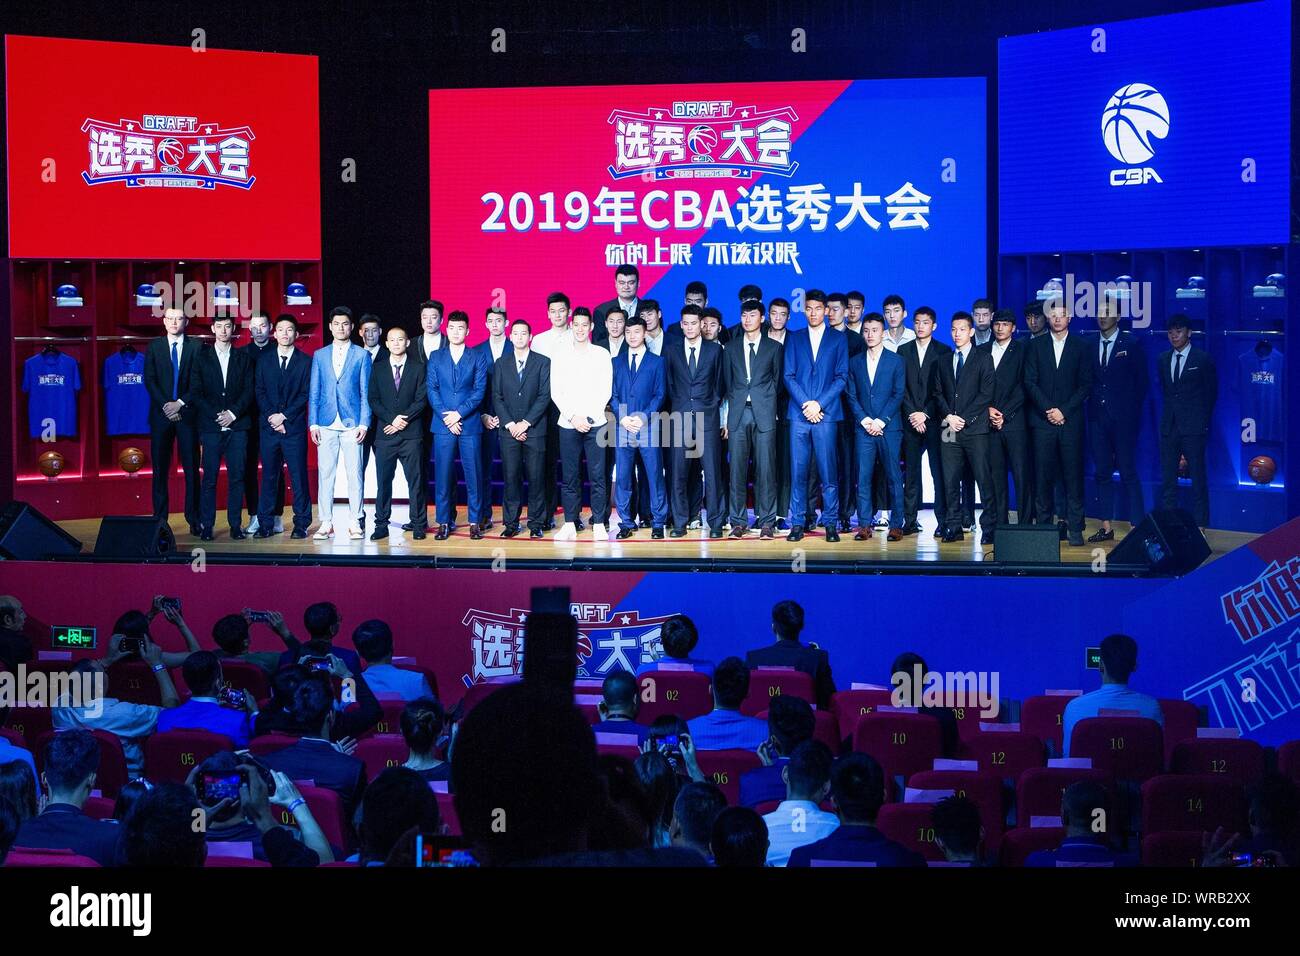 Étoile de basket-ball chinois Yao Ming, retour, Président de la Chinese Basketball Association (CBA), et star de la NBA, Jeremy Lin, 13e avant gauche, posent avec cand Banque D'Images